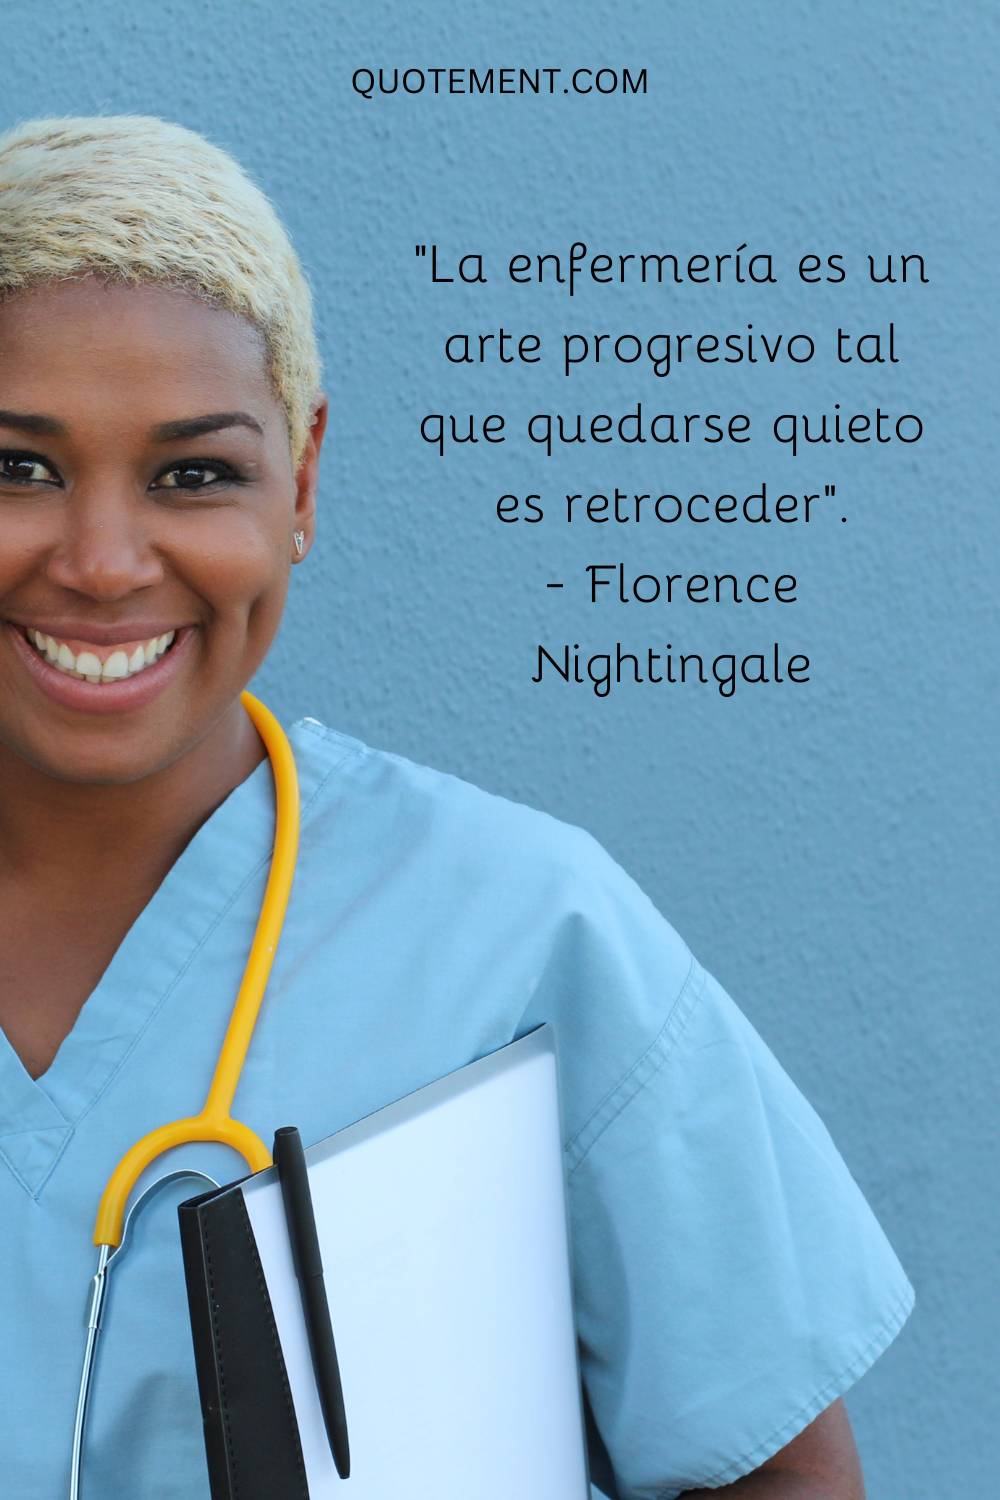 "La enfermería es un arte tan progresivo que quedarse quieto es retroceder". - Florence Nightingale